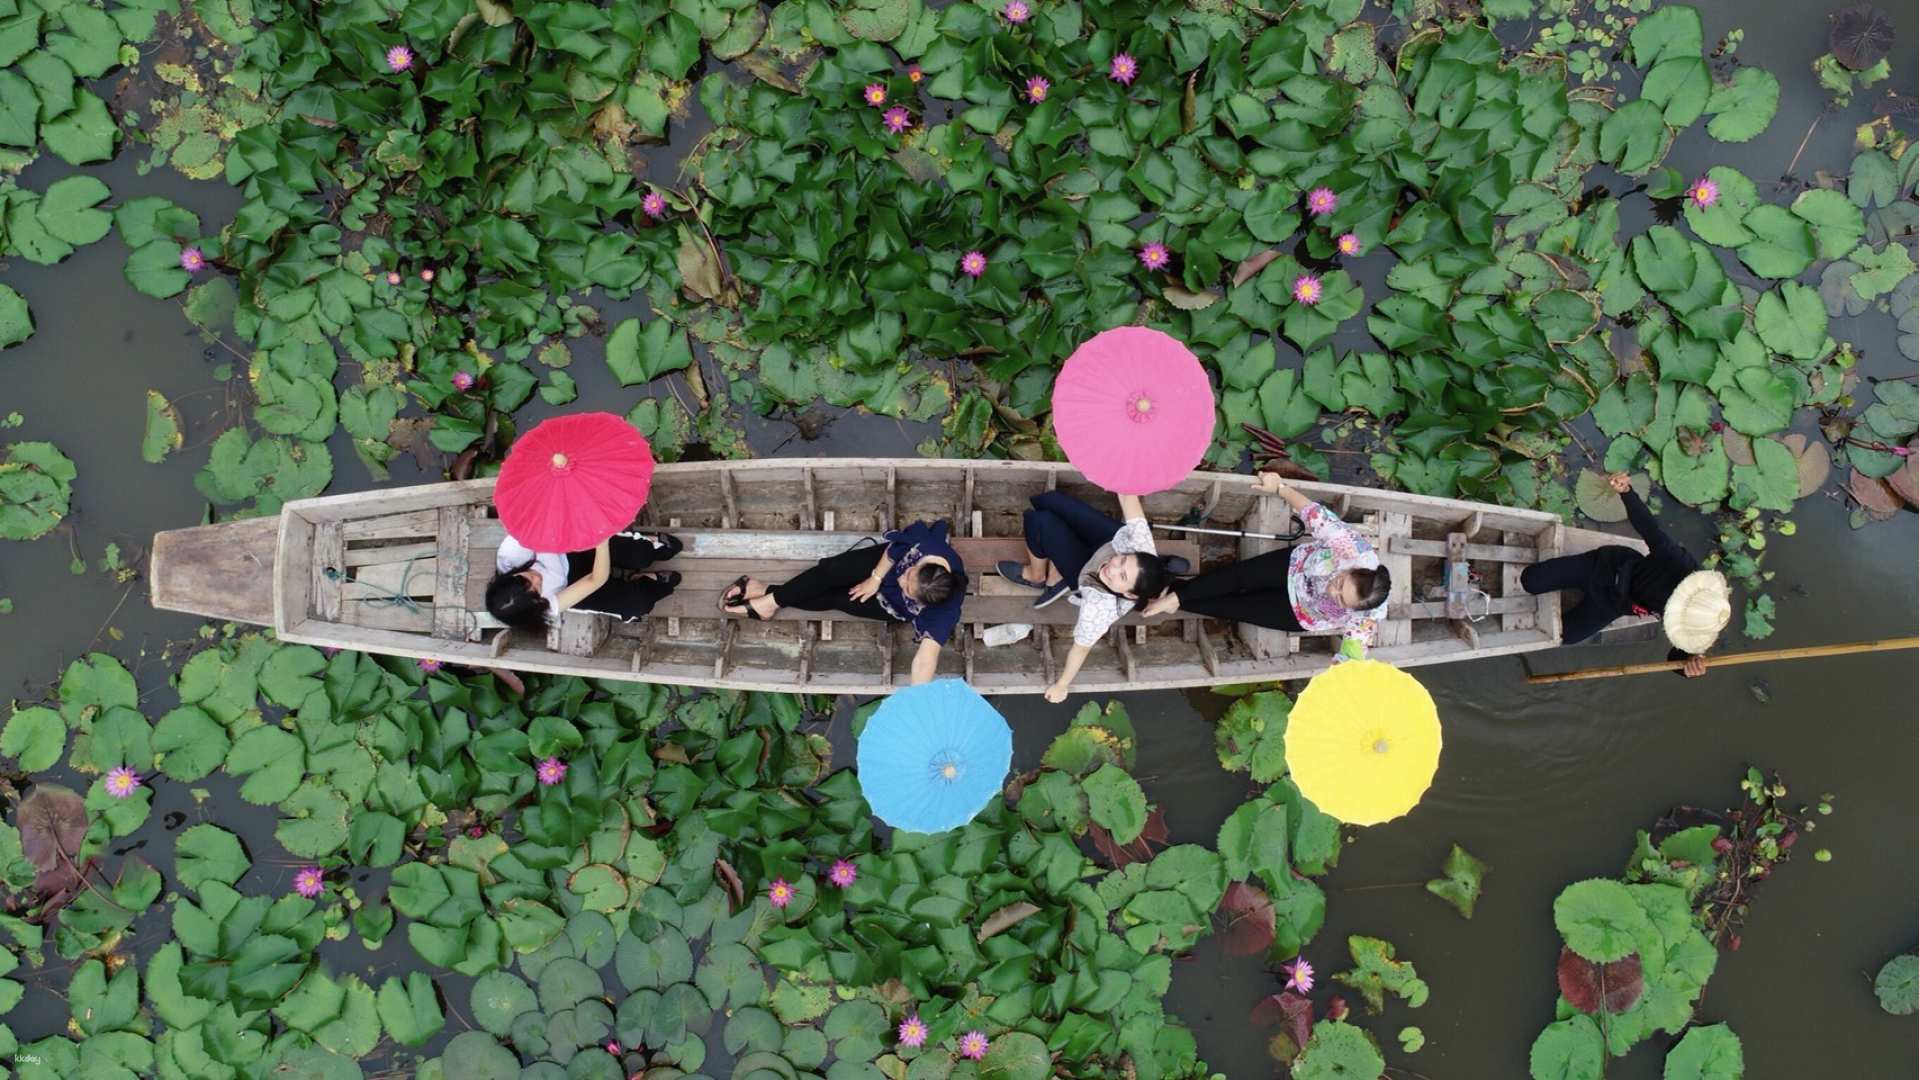 泰國-曼谷Red Lotus Floating Market 空拍迷你紅蓮花海特色體驗&吞武里市場文化體驗 | CNN推薦曼谷行程